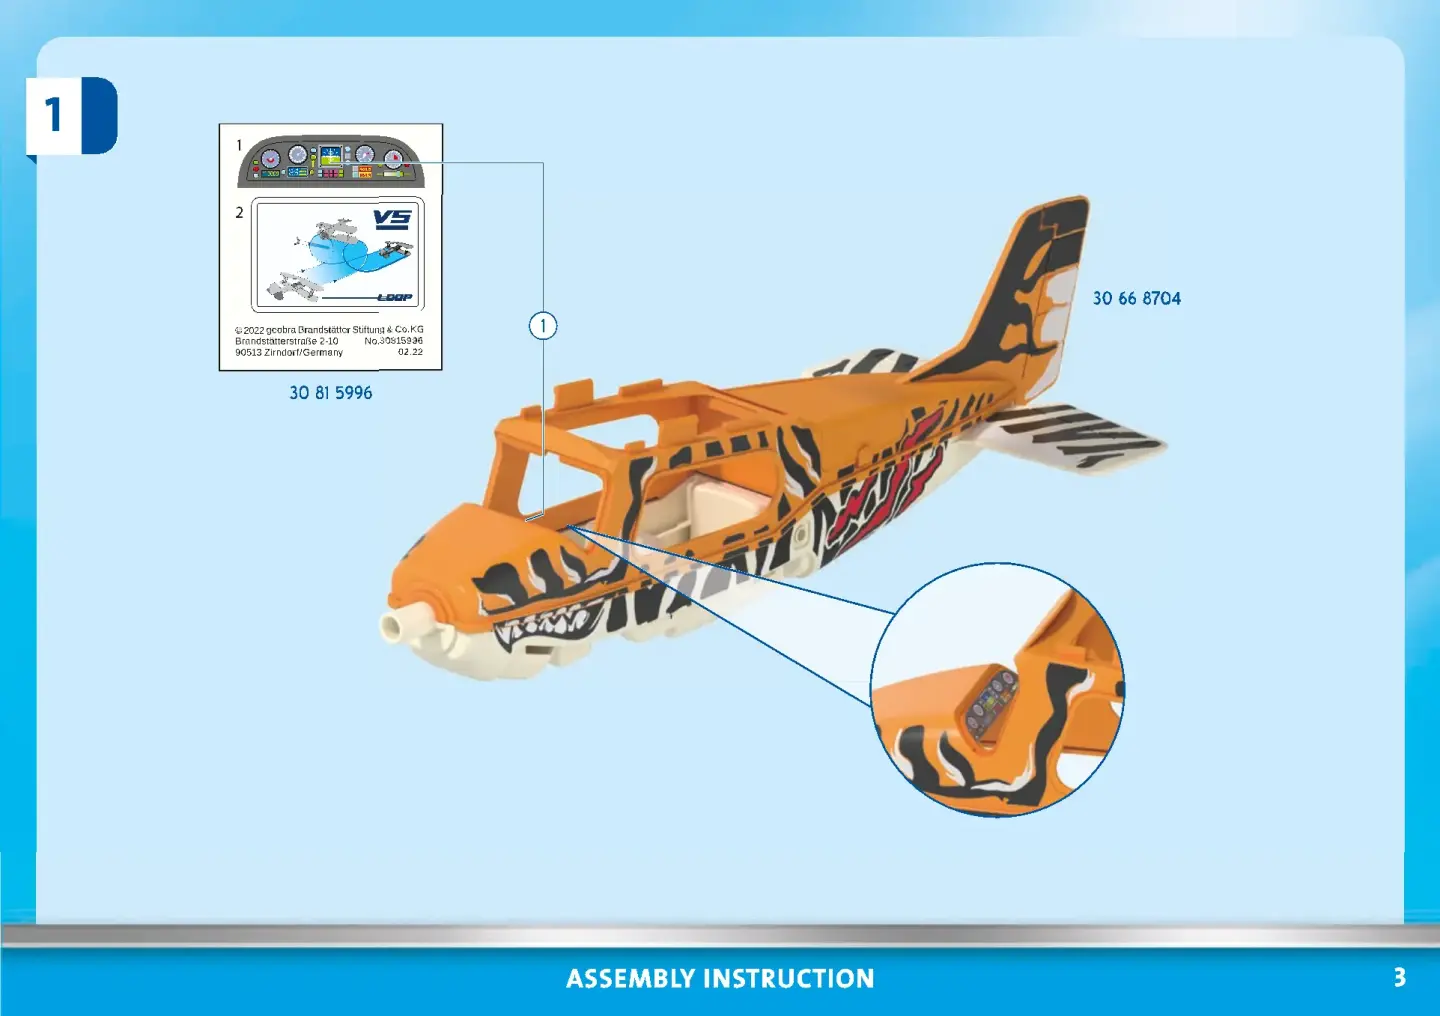 PLAYMOBIL AIR STUNT SHOW 70902 - Avion à hélice Tiger Playmobil